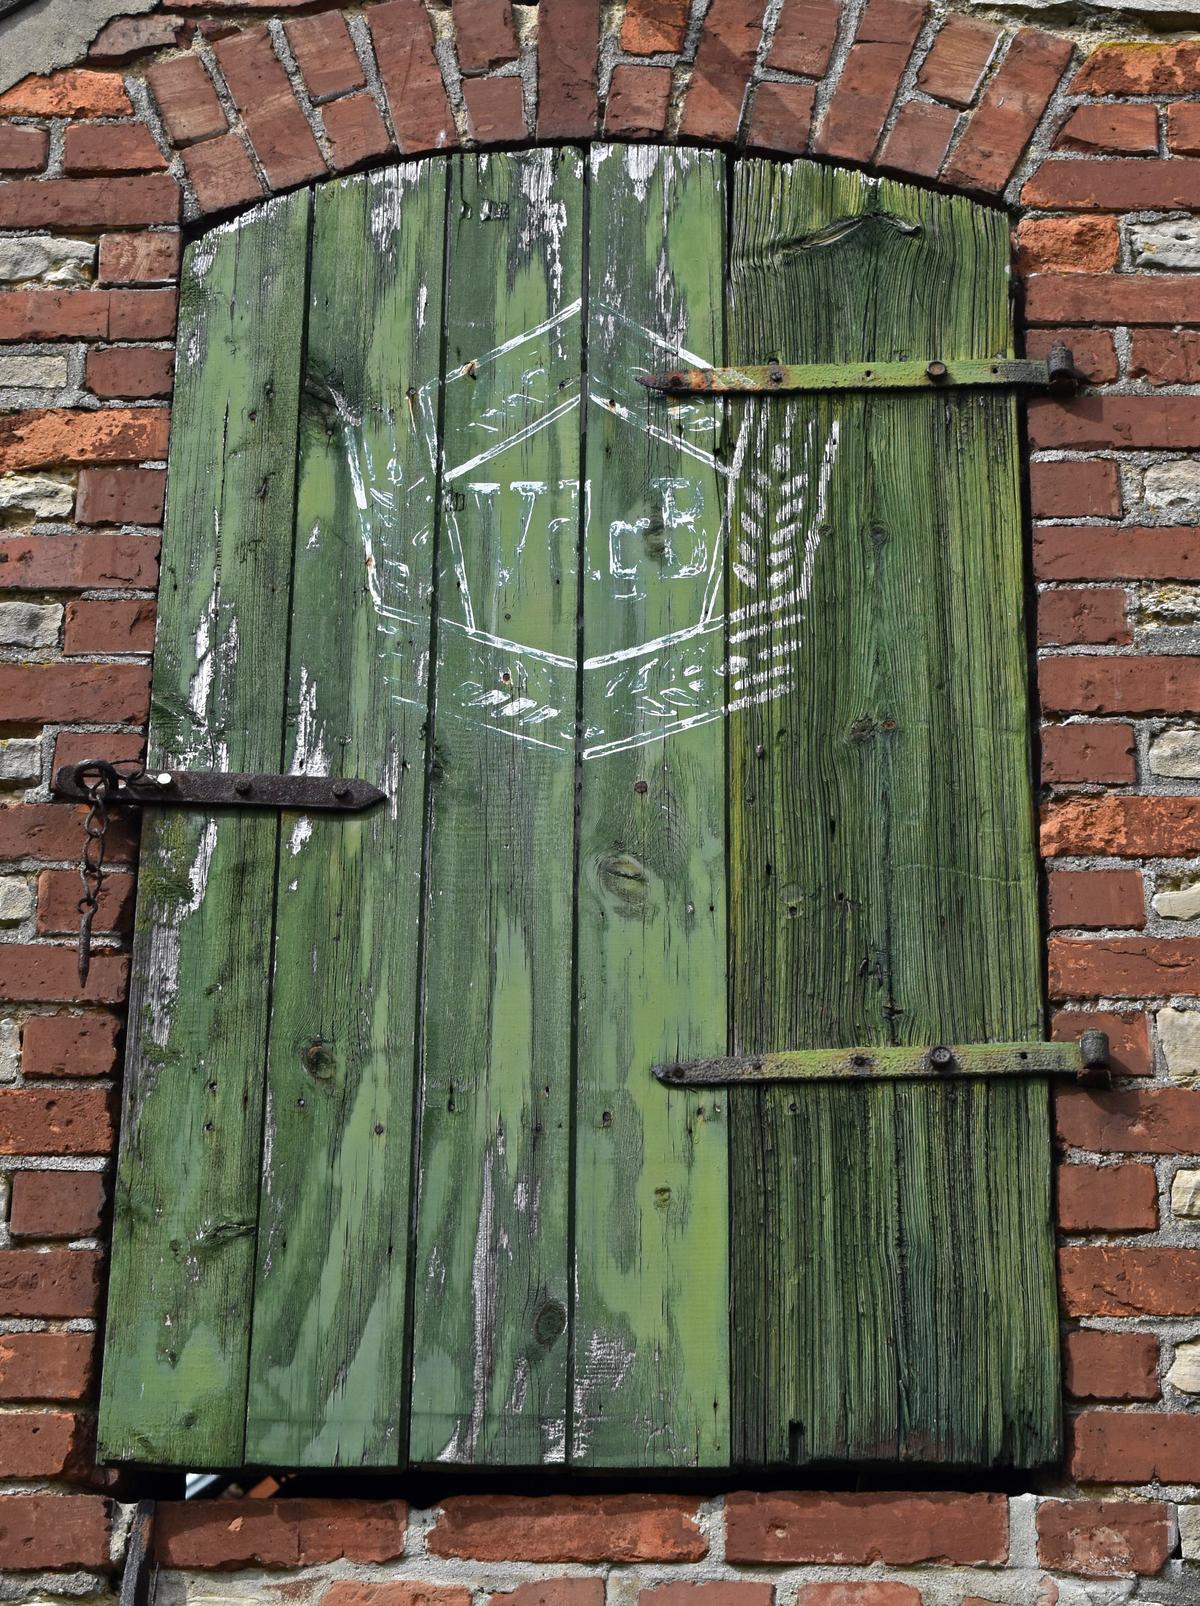 Diese Aufschrift auf der Tür zum Dachbereich der Neuwegersleber »Schinkelschmiede« erinnert daran, dass das historische Bauwerk zu DDR-Zeiten unter anderem von der VdgB (Vereinigung der gegenseitigen Bauerhilfe) genutzt worden ist.